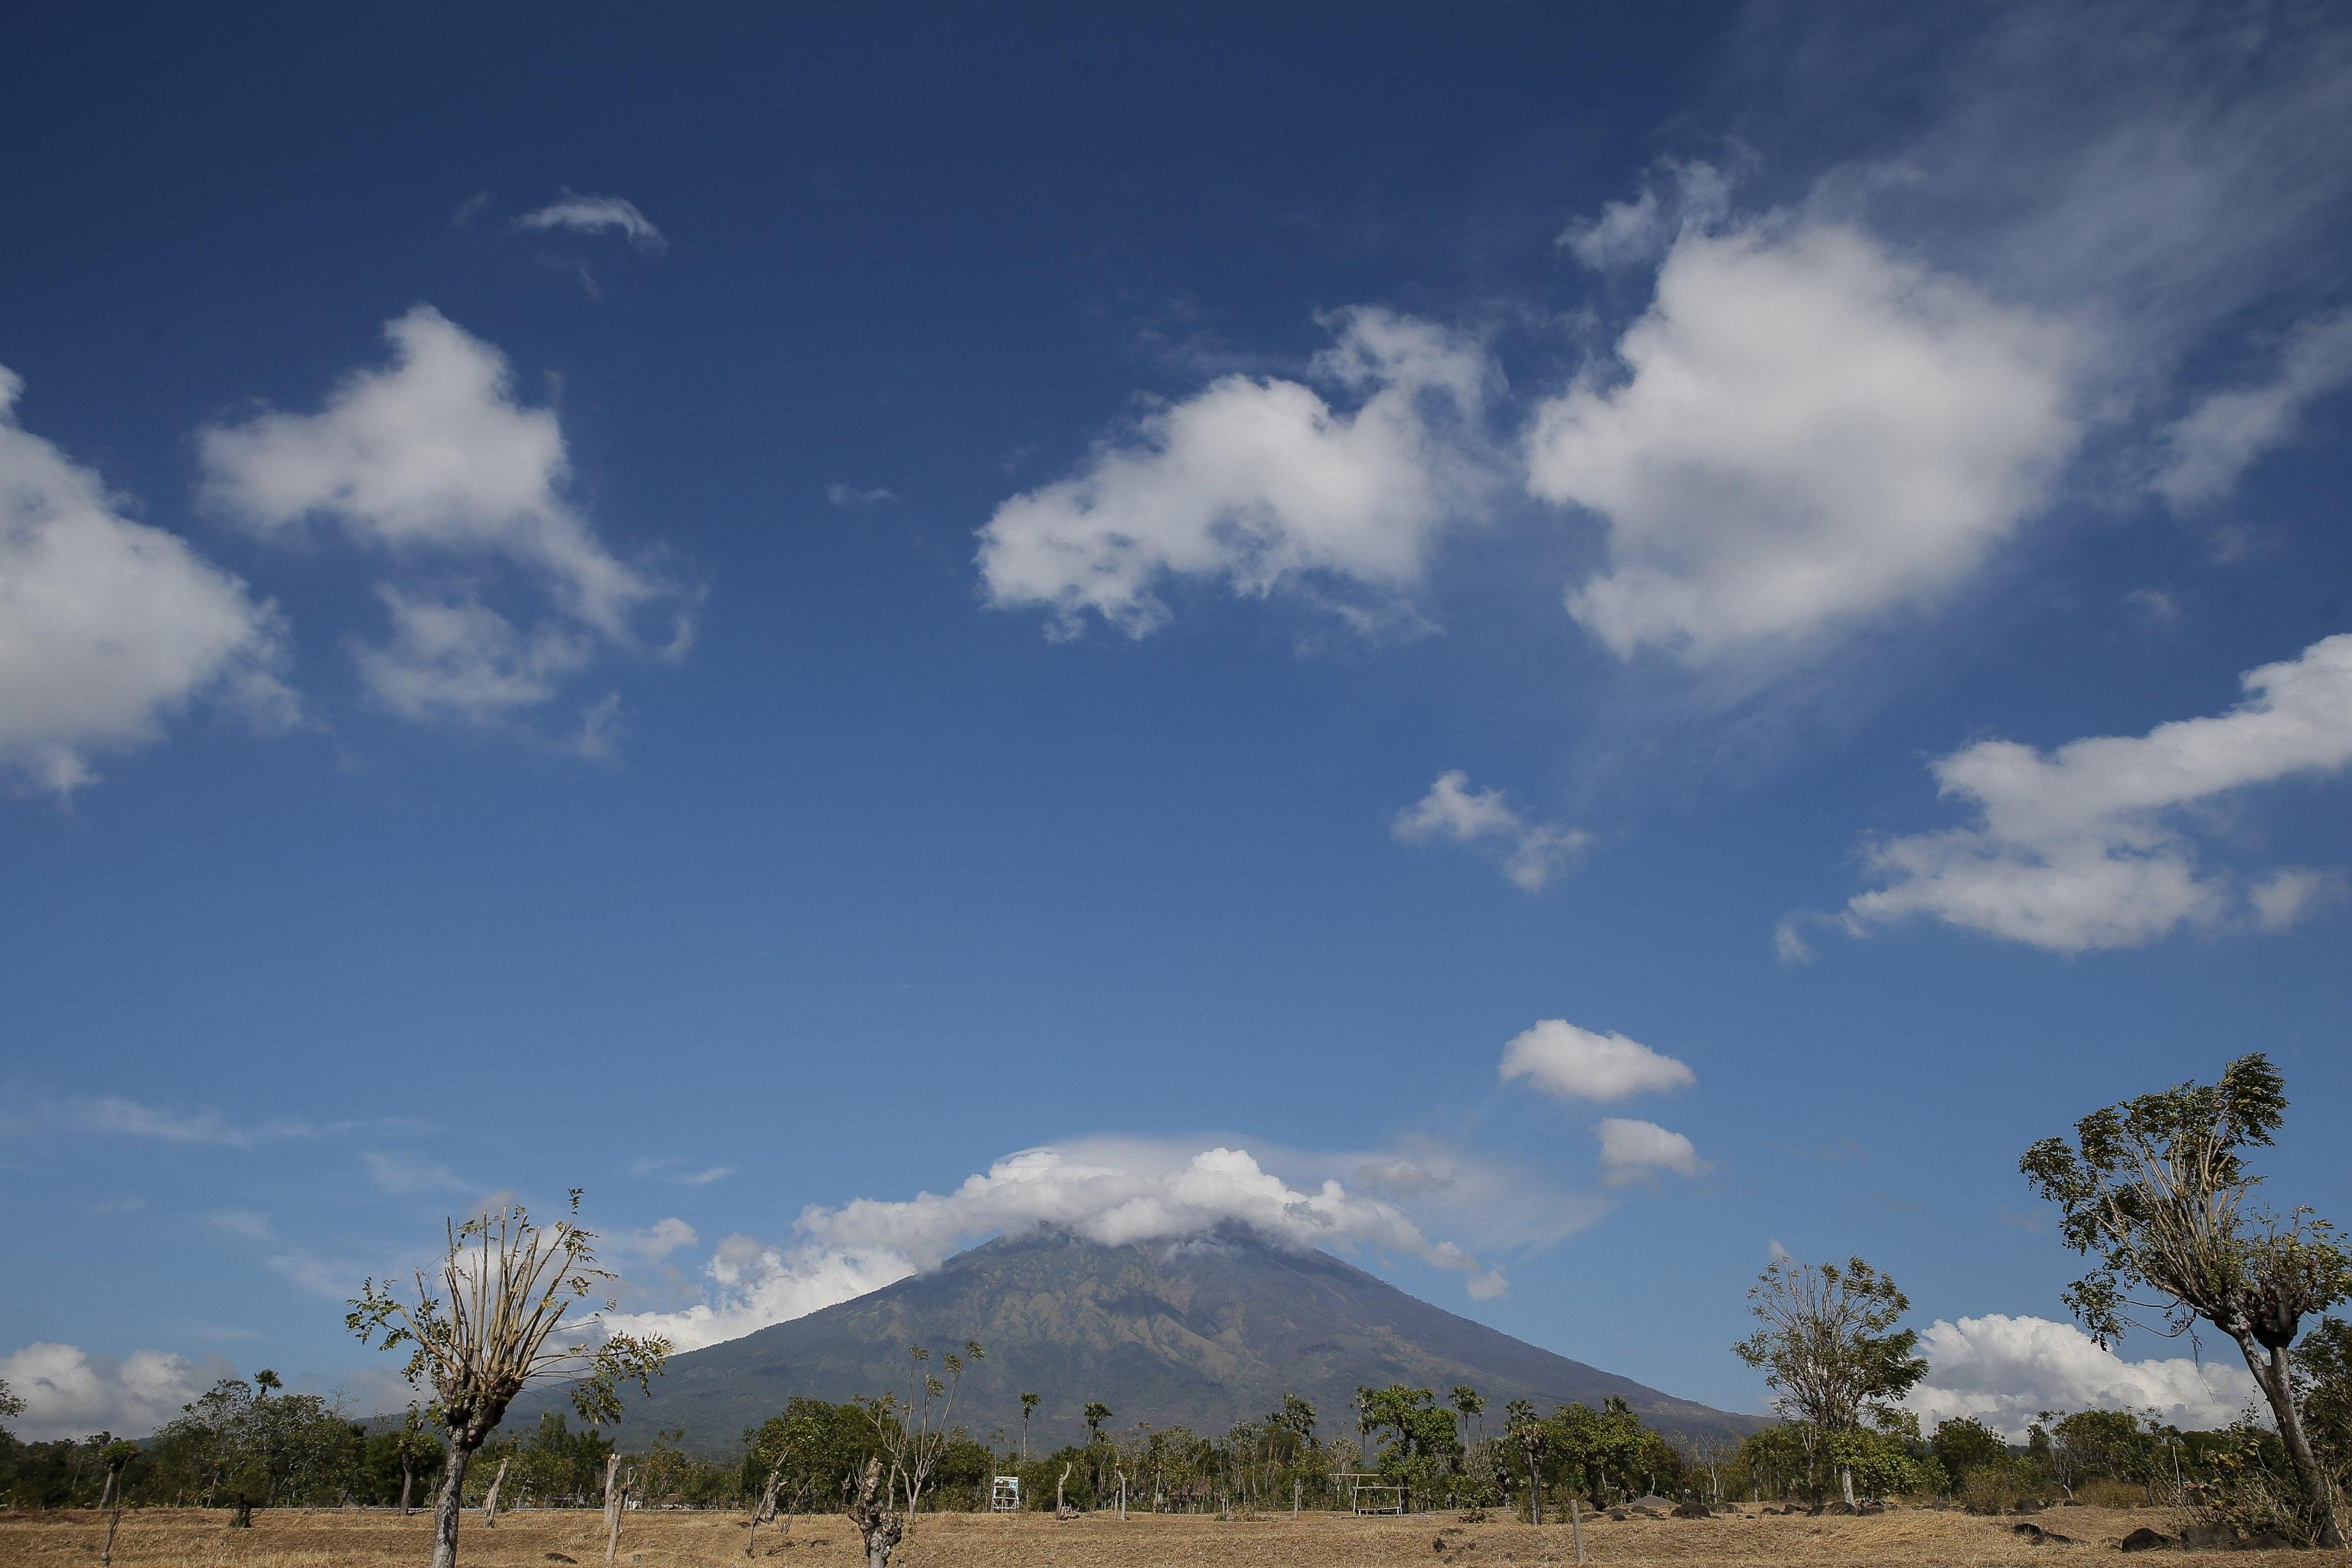 Il monte Agung è uno stratovulacono ancora attivo dell’Isola di Bali, in Indonesia. È già eruttato in passato, l’ultima volta fu nel 1963 dove morirono circa 1000 persone